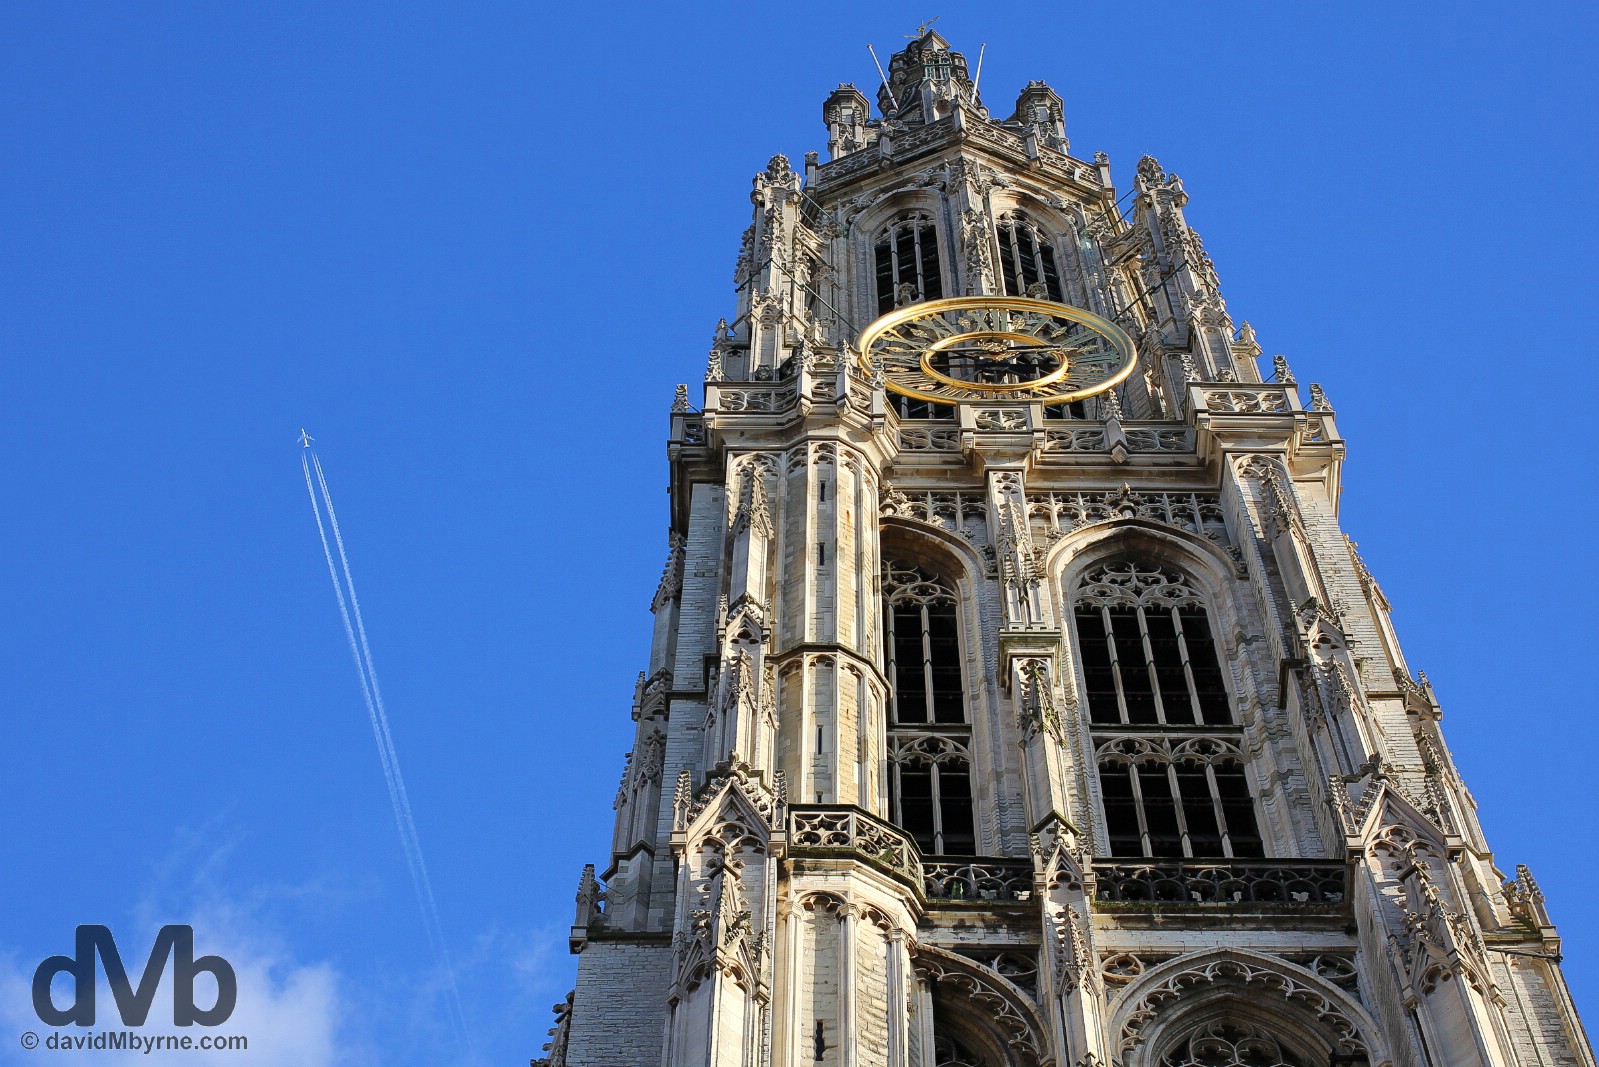 Tower of the Onze Lieve Vrouwekathedraal in Handschoen Markt, central Antwerp, Belgium. January 17, 2016.